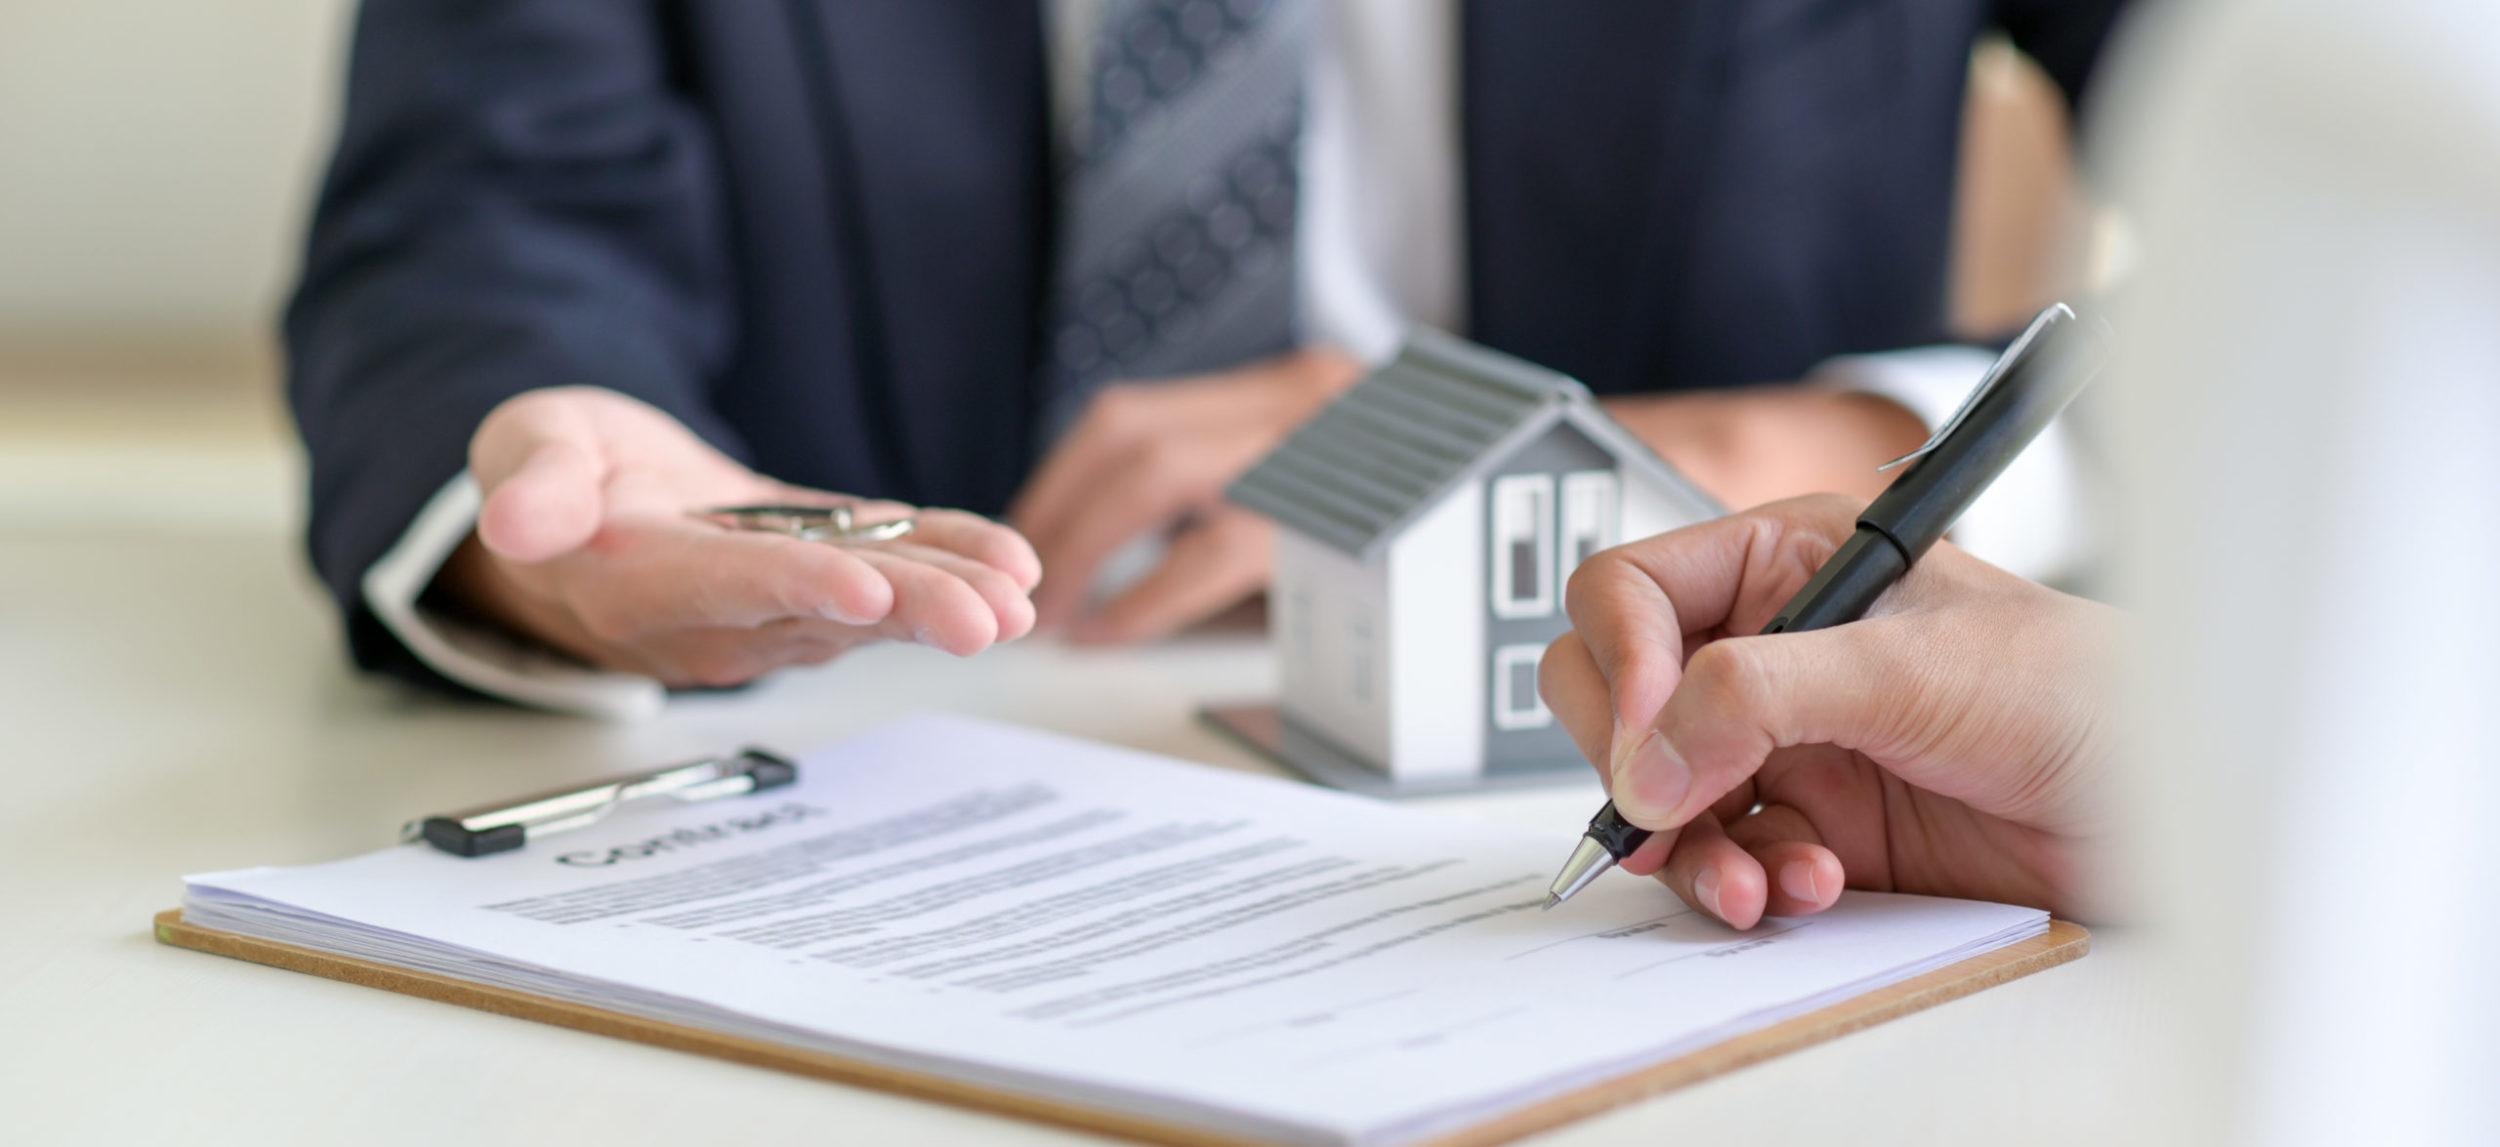 Comment calculer le taux d'intérêt sur un prêt immobilier